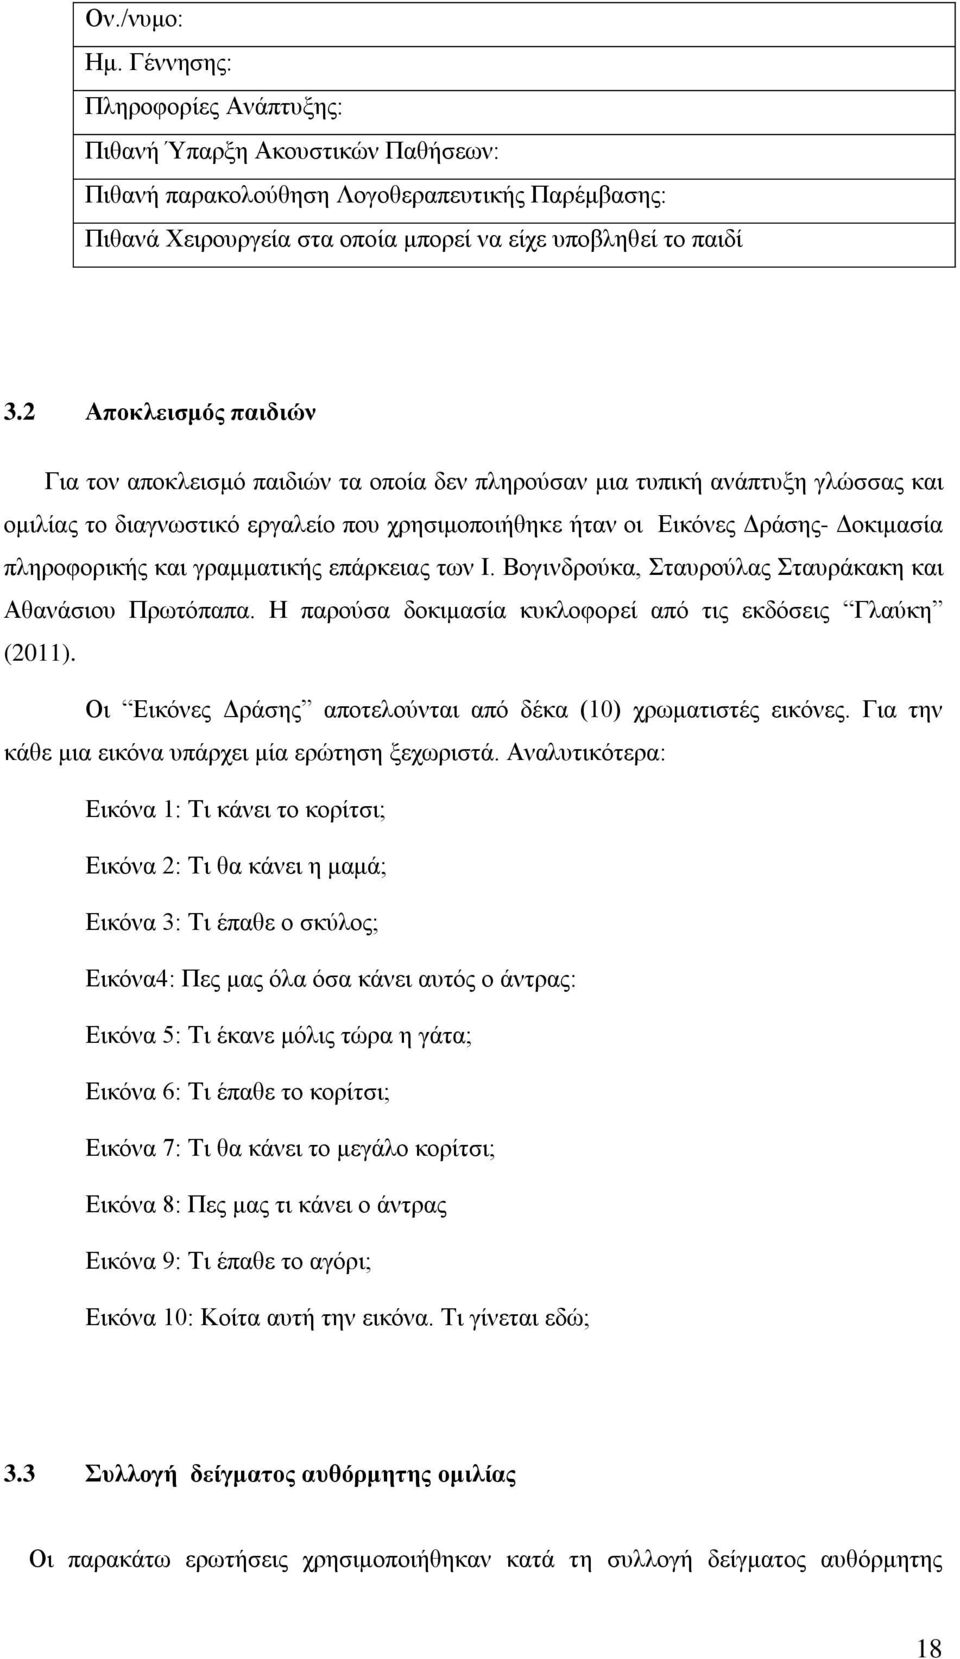 πληροφορικής και γραμματικής επάρκειας των Ι. Βογινδρούκα, Σταυρούλας Σταυράκακη και Αθανάσιου Πρωτόπαπα. Η παρούσα δοκιμασία κυκλοφορεί από τις εκδόσεις Γλαύκη (2011).